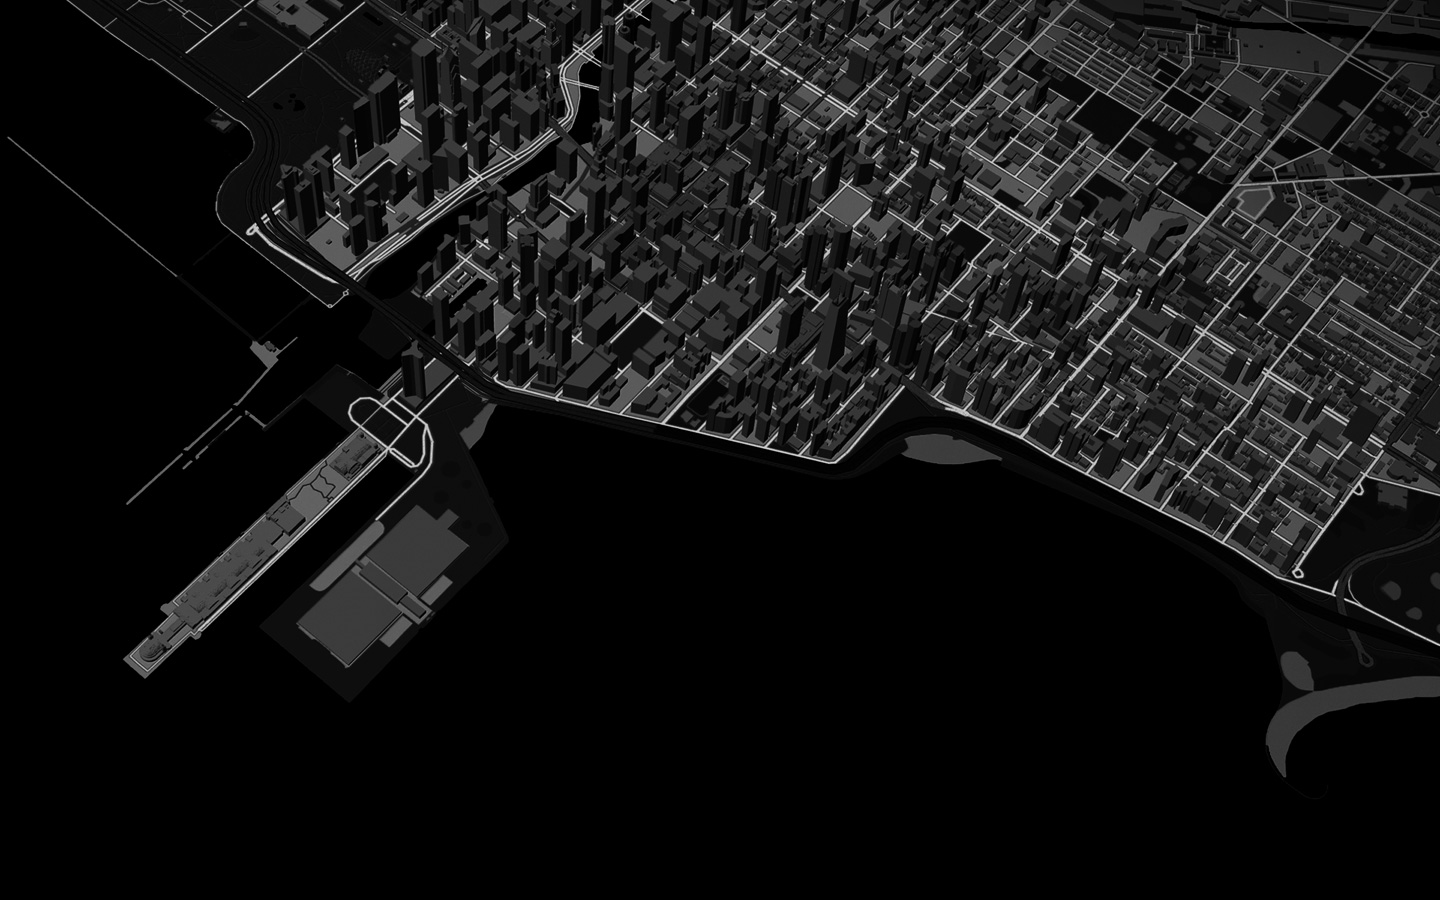 Animaatio viivasta, joka esittää juoksijan reittiä kaupungin halki 3D-karttanäkymässä